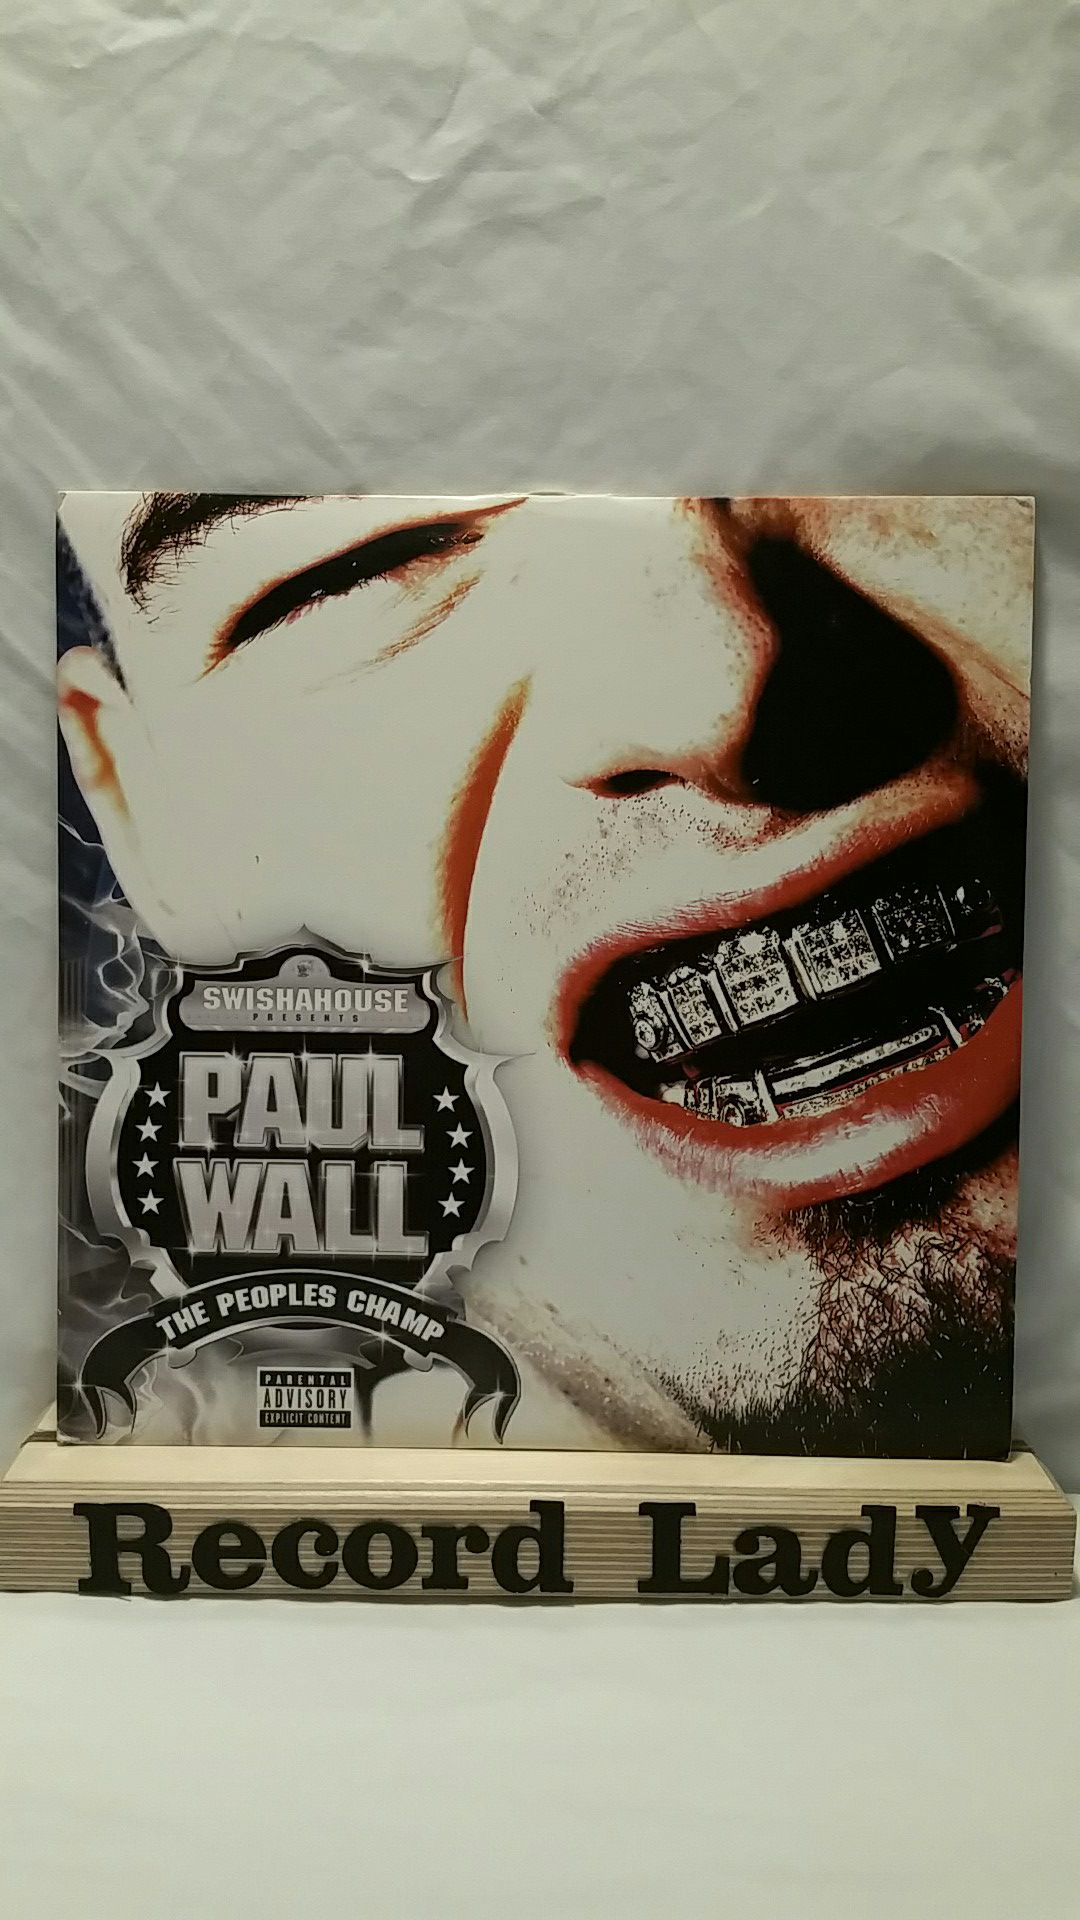 Paul Wall "The People's Champ" 2XLP vinyl records hip-hop / rap